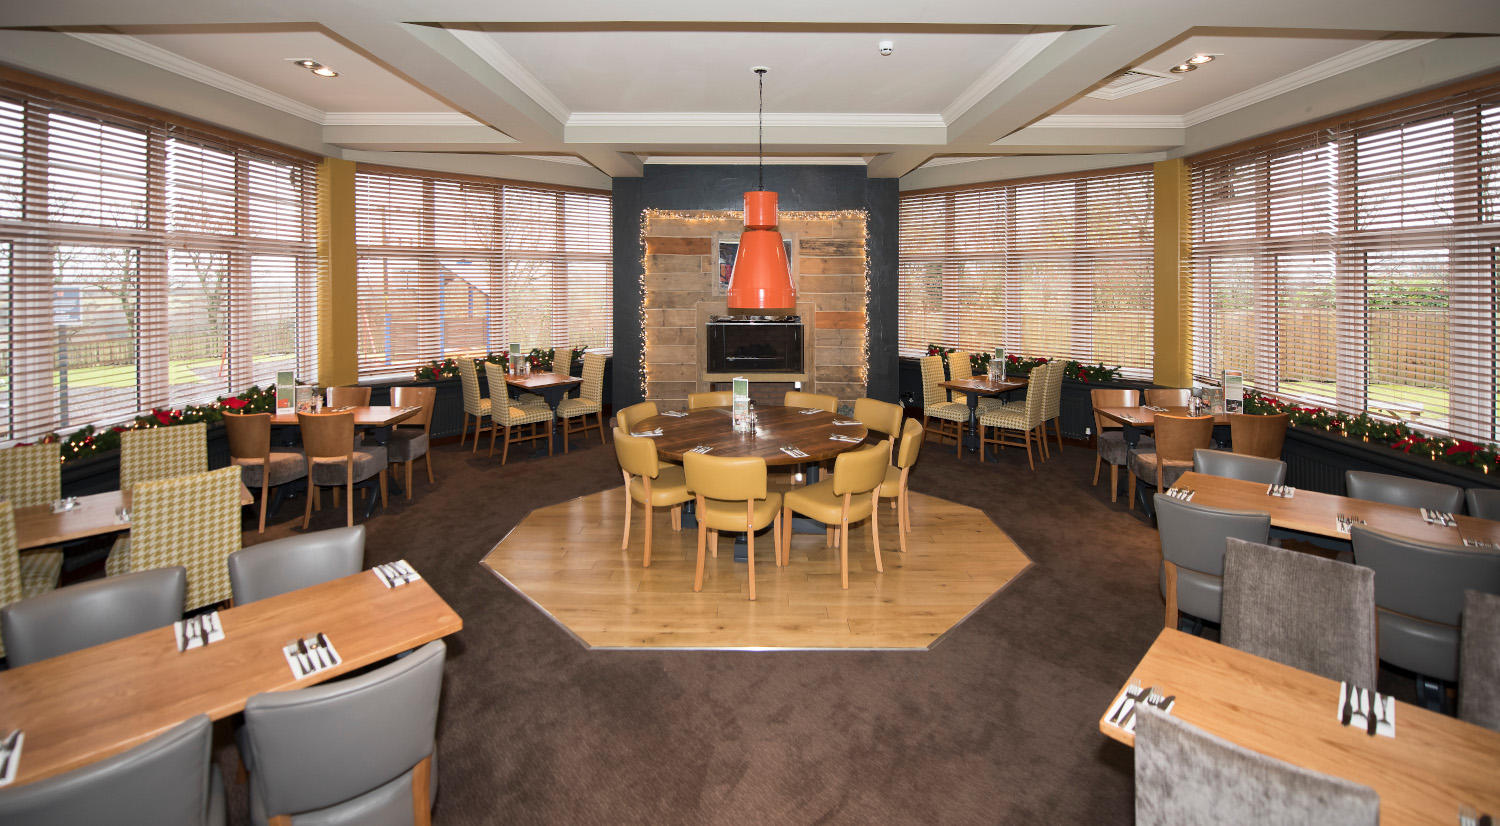 Beefeater restaurant interior Premier Inn Glasgow (Motherwell) hotel Motherwell 03337 777287